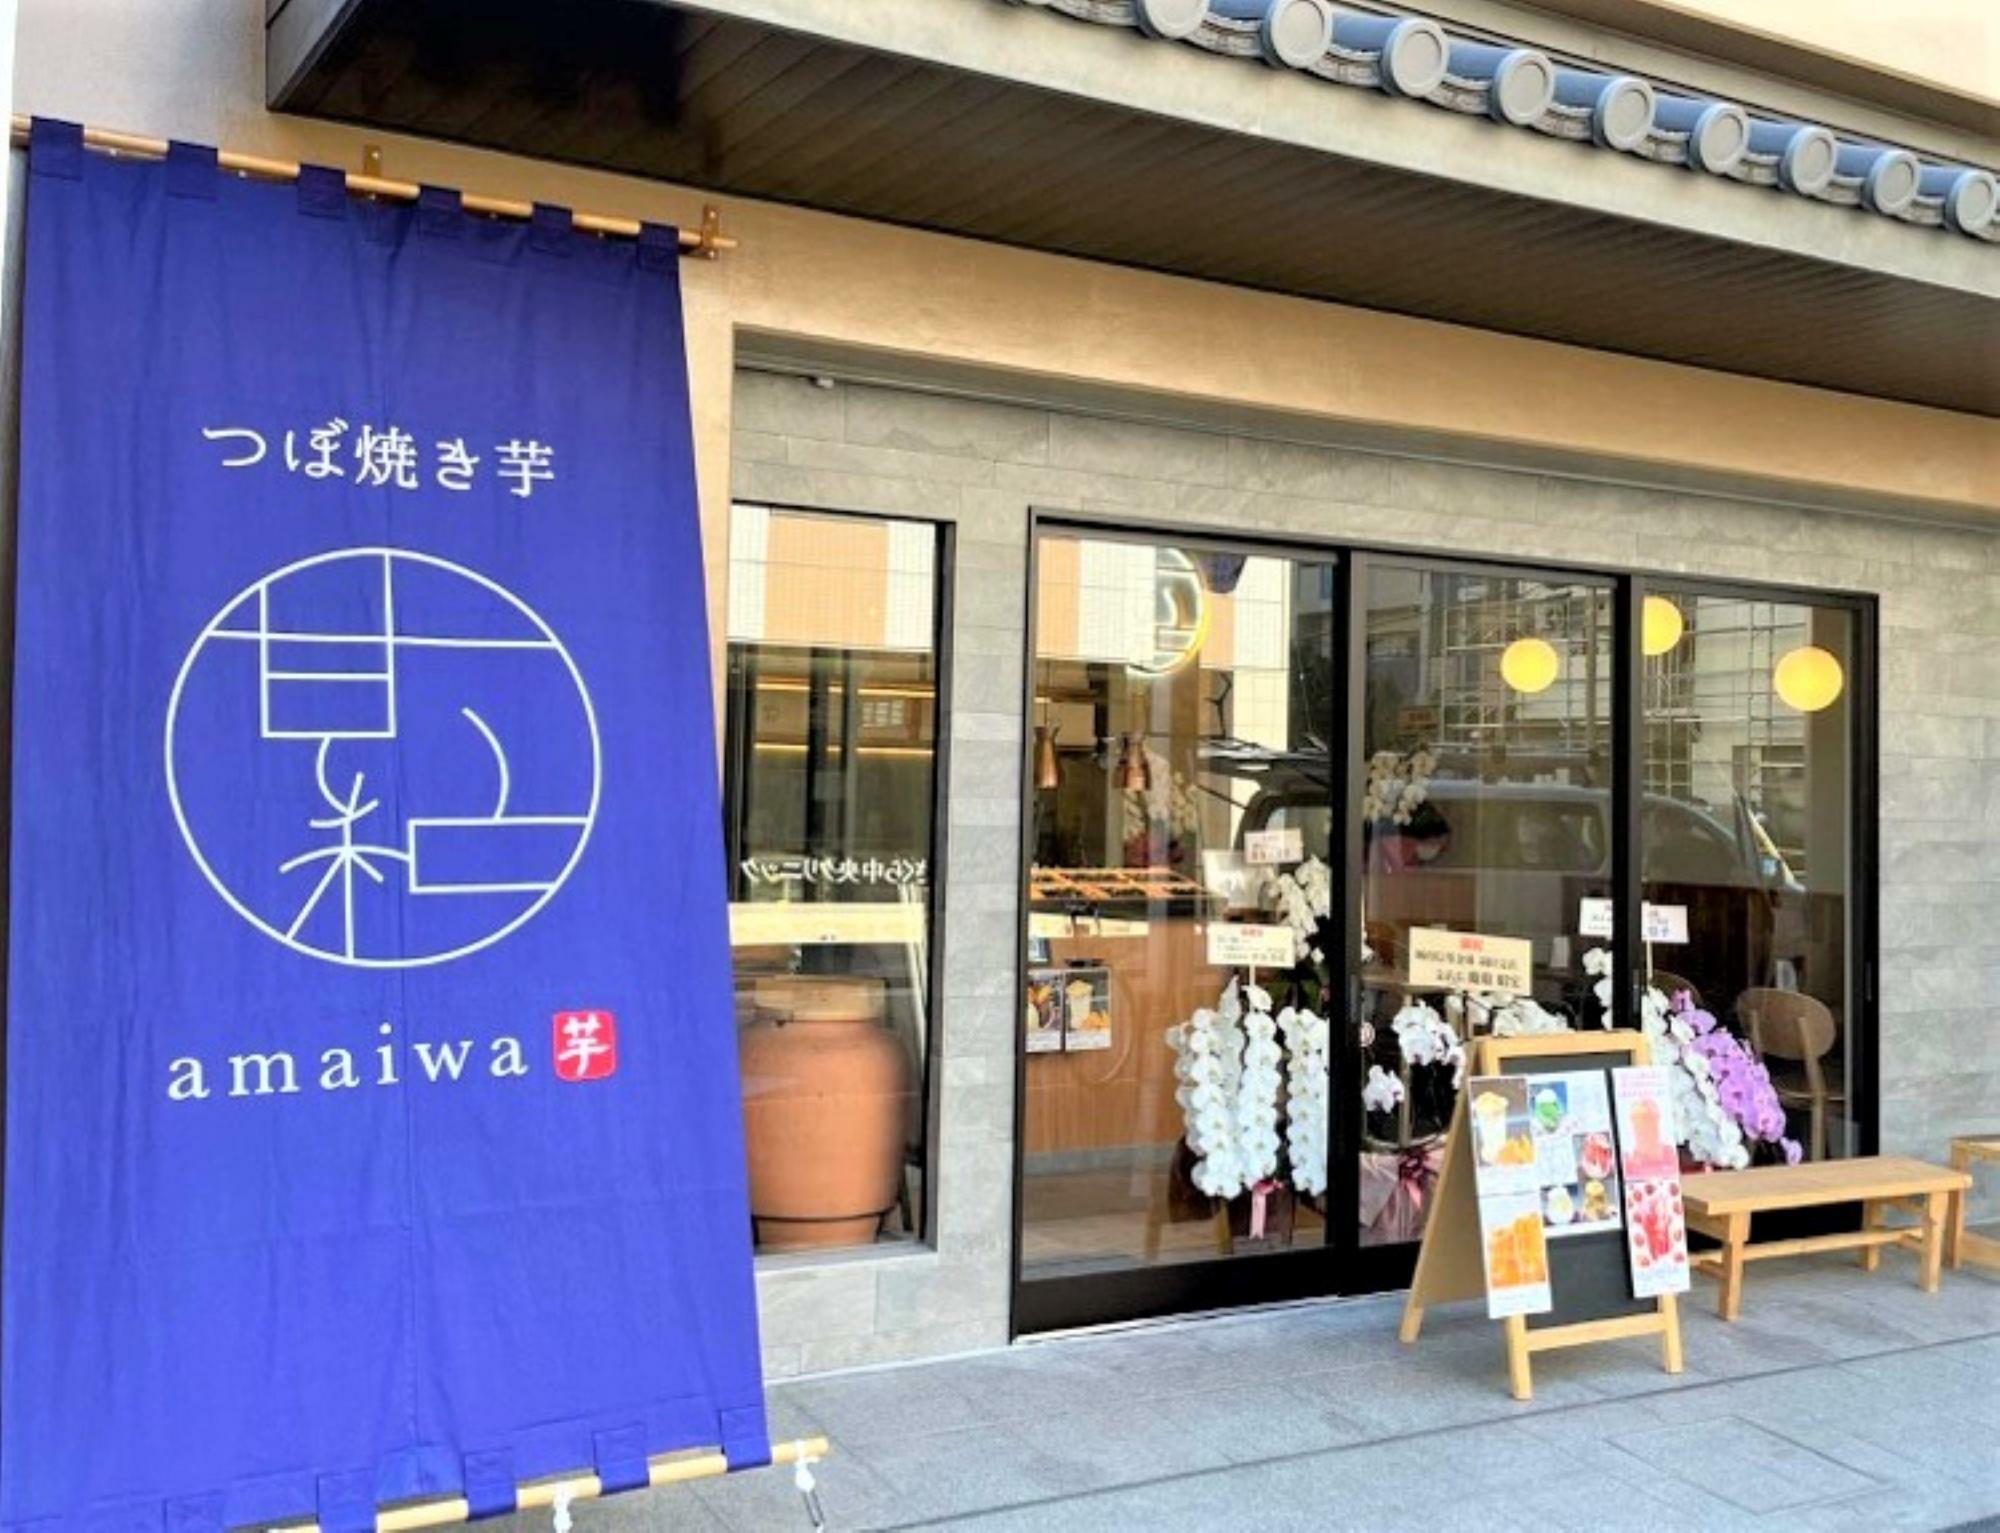 「つぼ焼き芋 甘い和 川崎大師店」